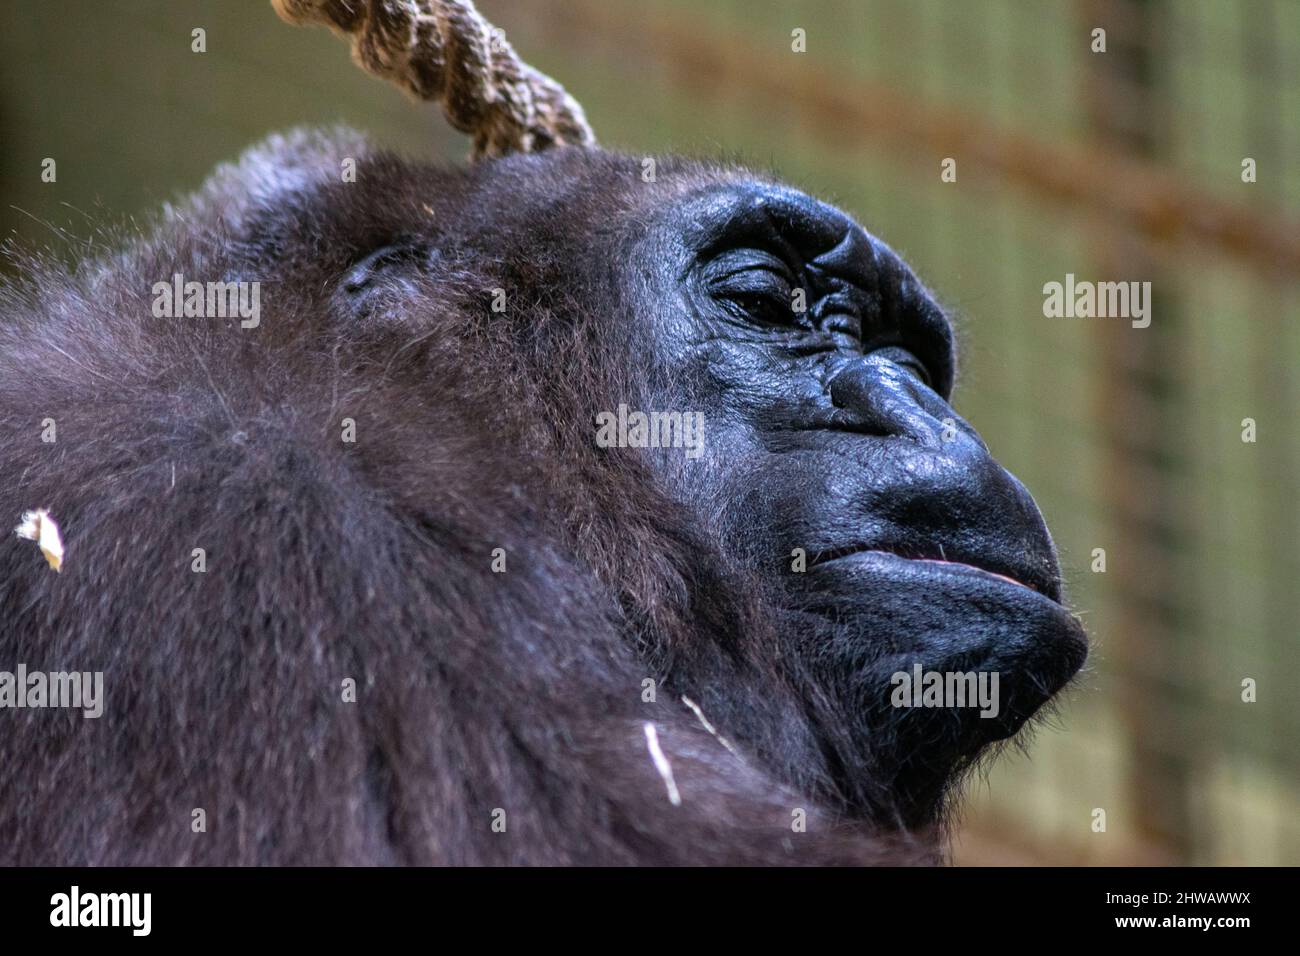 Schönes Gorilla-Porträt, Gorilla ruht friedlich. Große Tiere ruhen. Gorillas sind pflanzenfressende, überwiegend bodenbewohnende Menschenaffen. Stockfoto